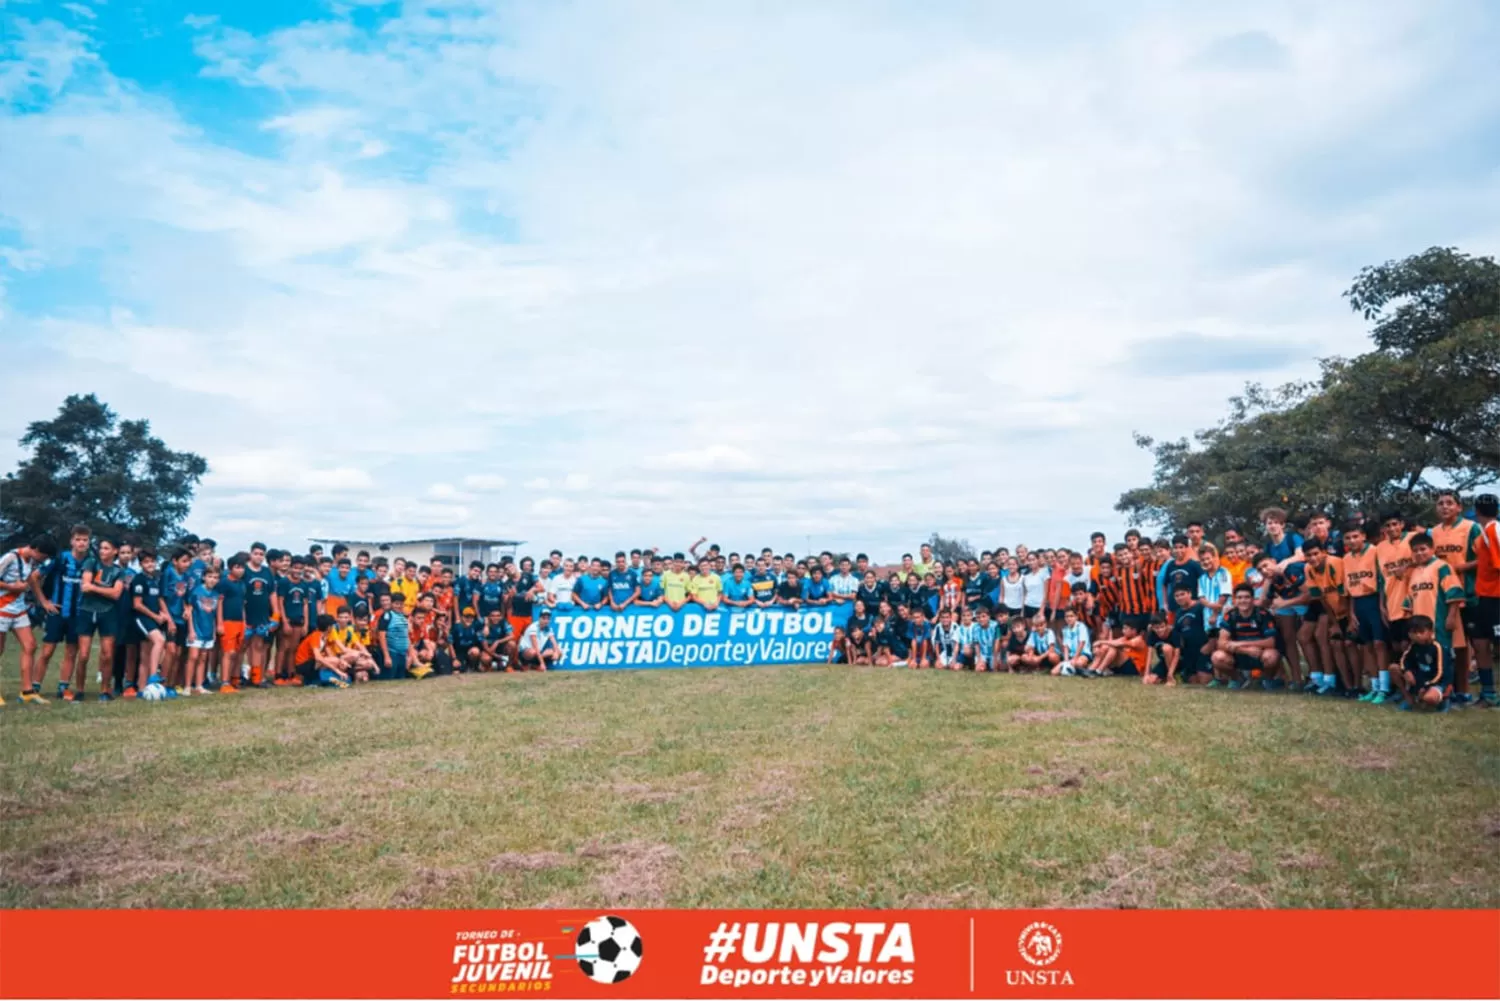  Más de 700 estudiantes participan en el torneo de fútbol organizado por la Unsta